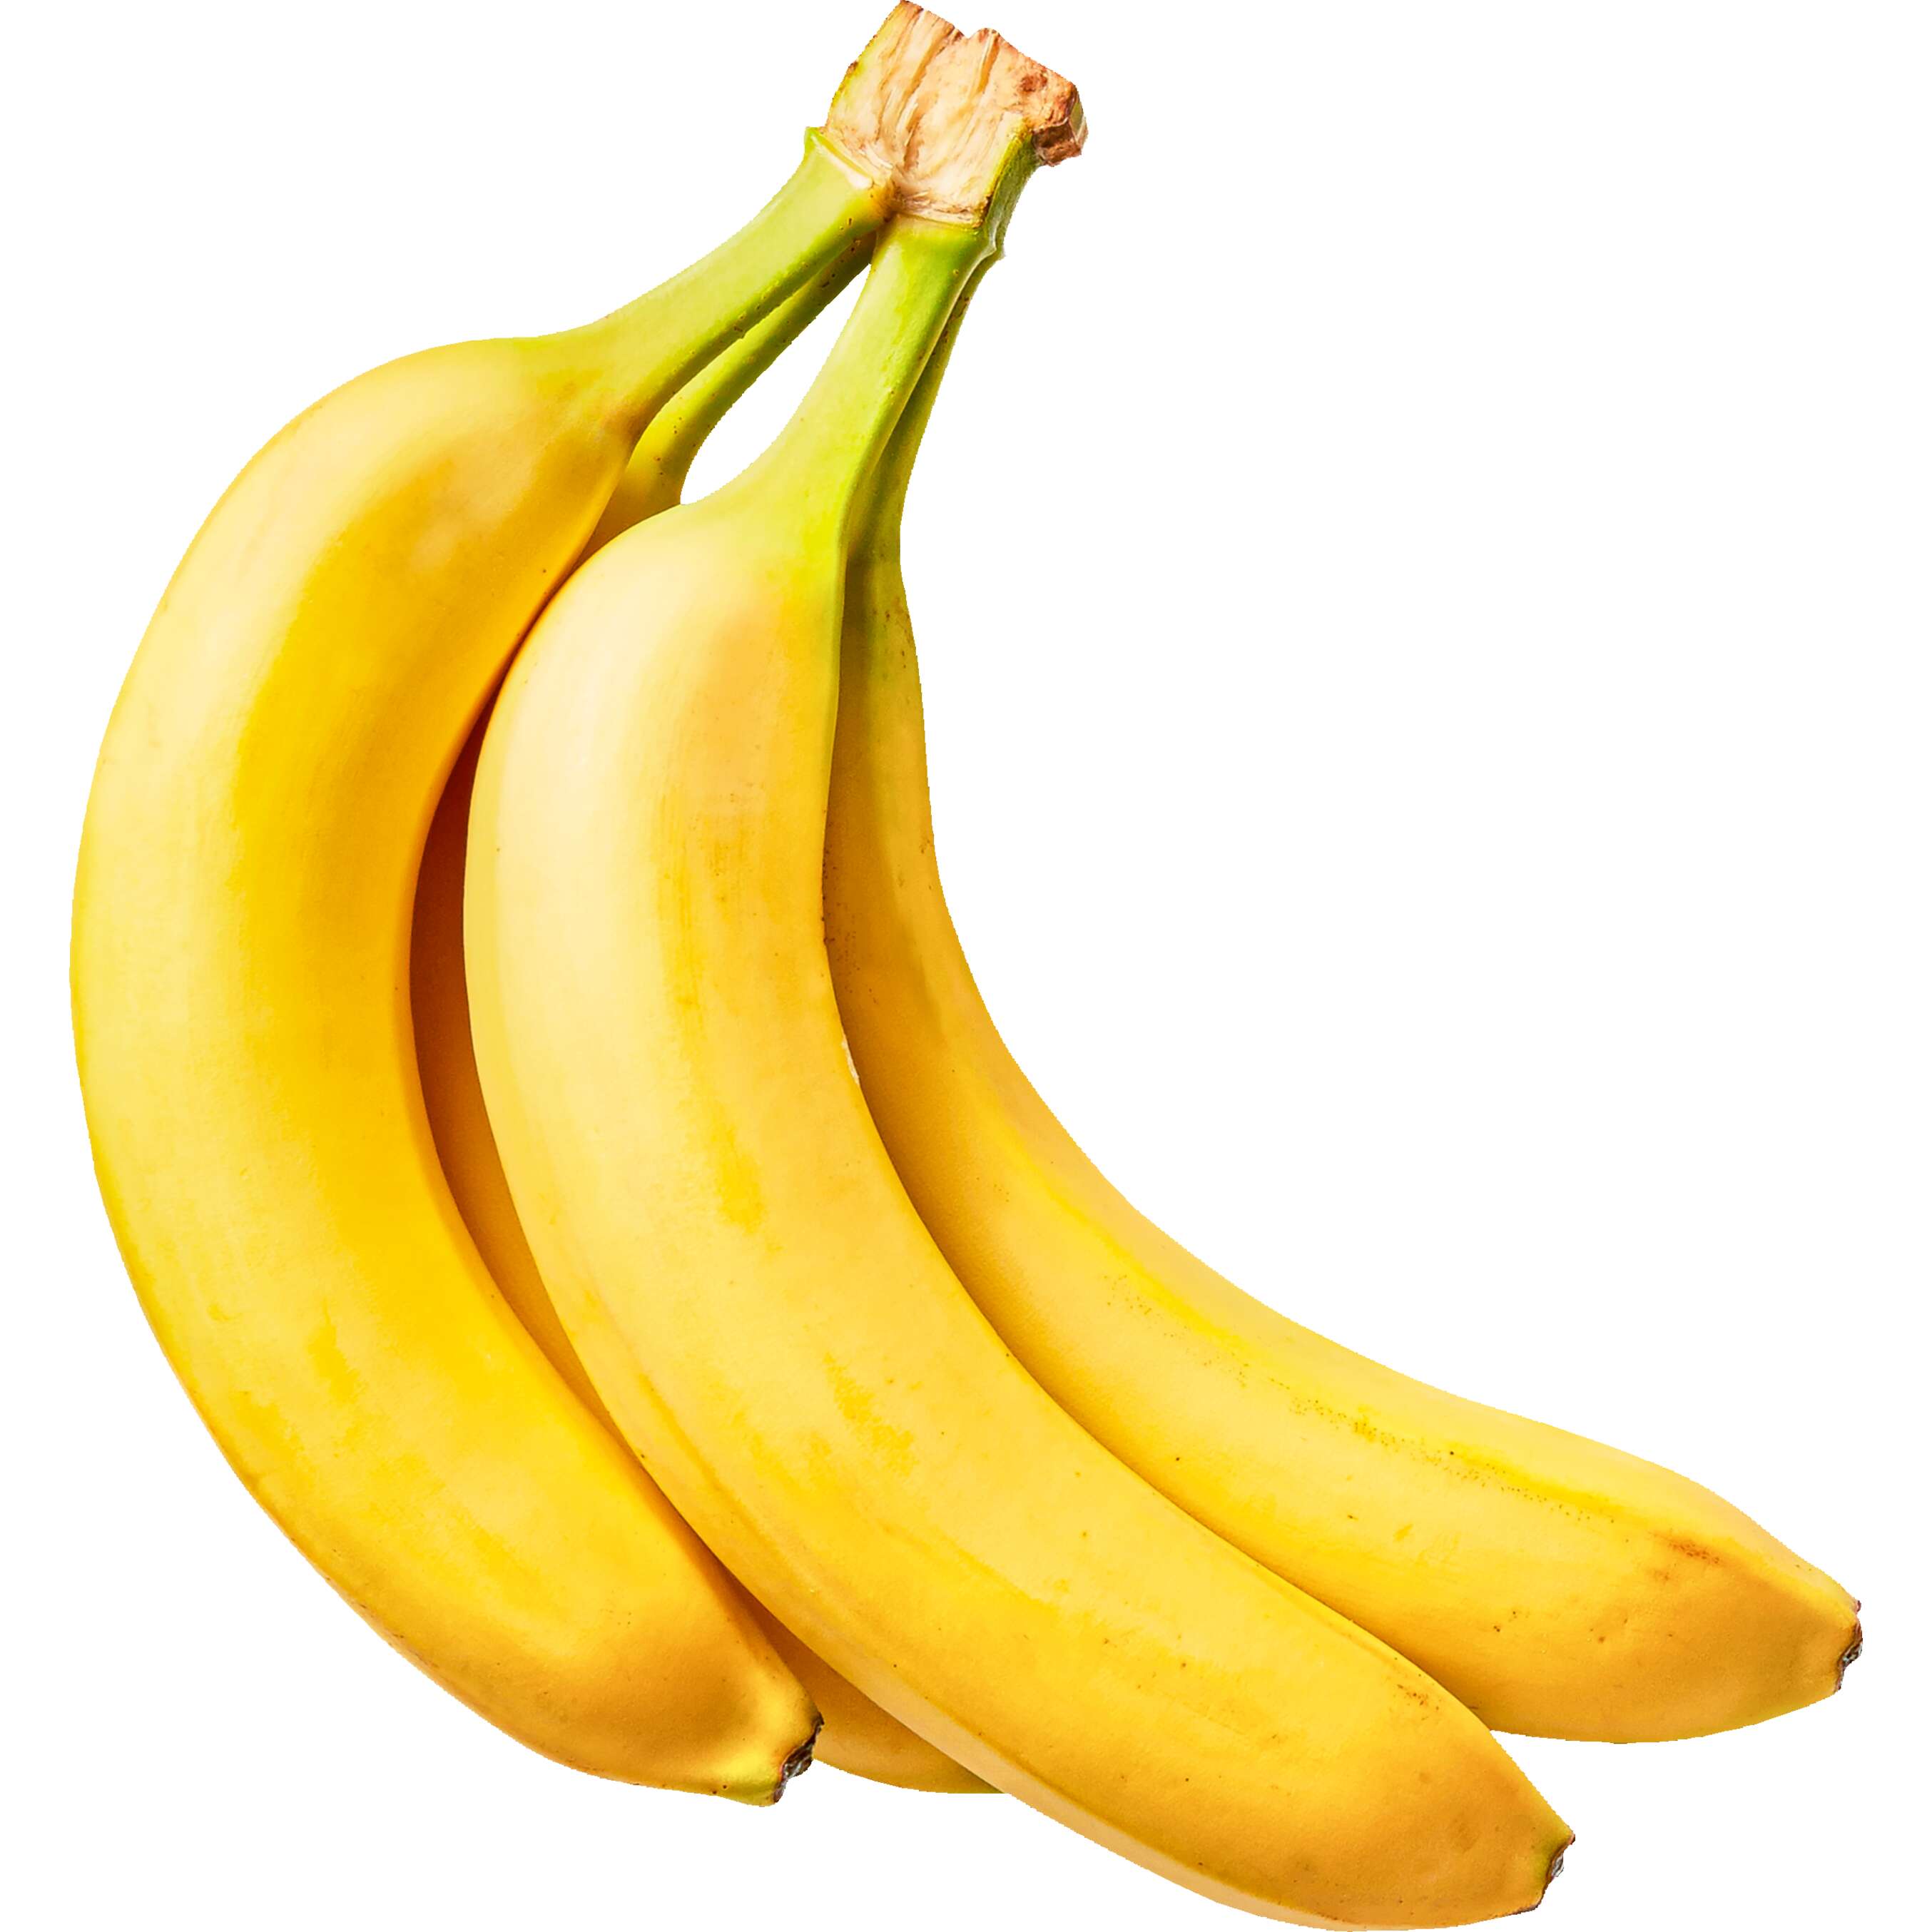 Zobrazit nabídku Banány 